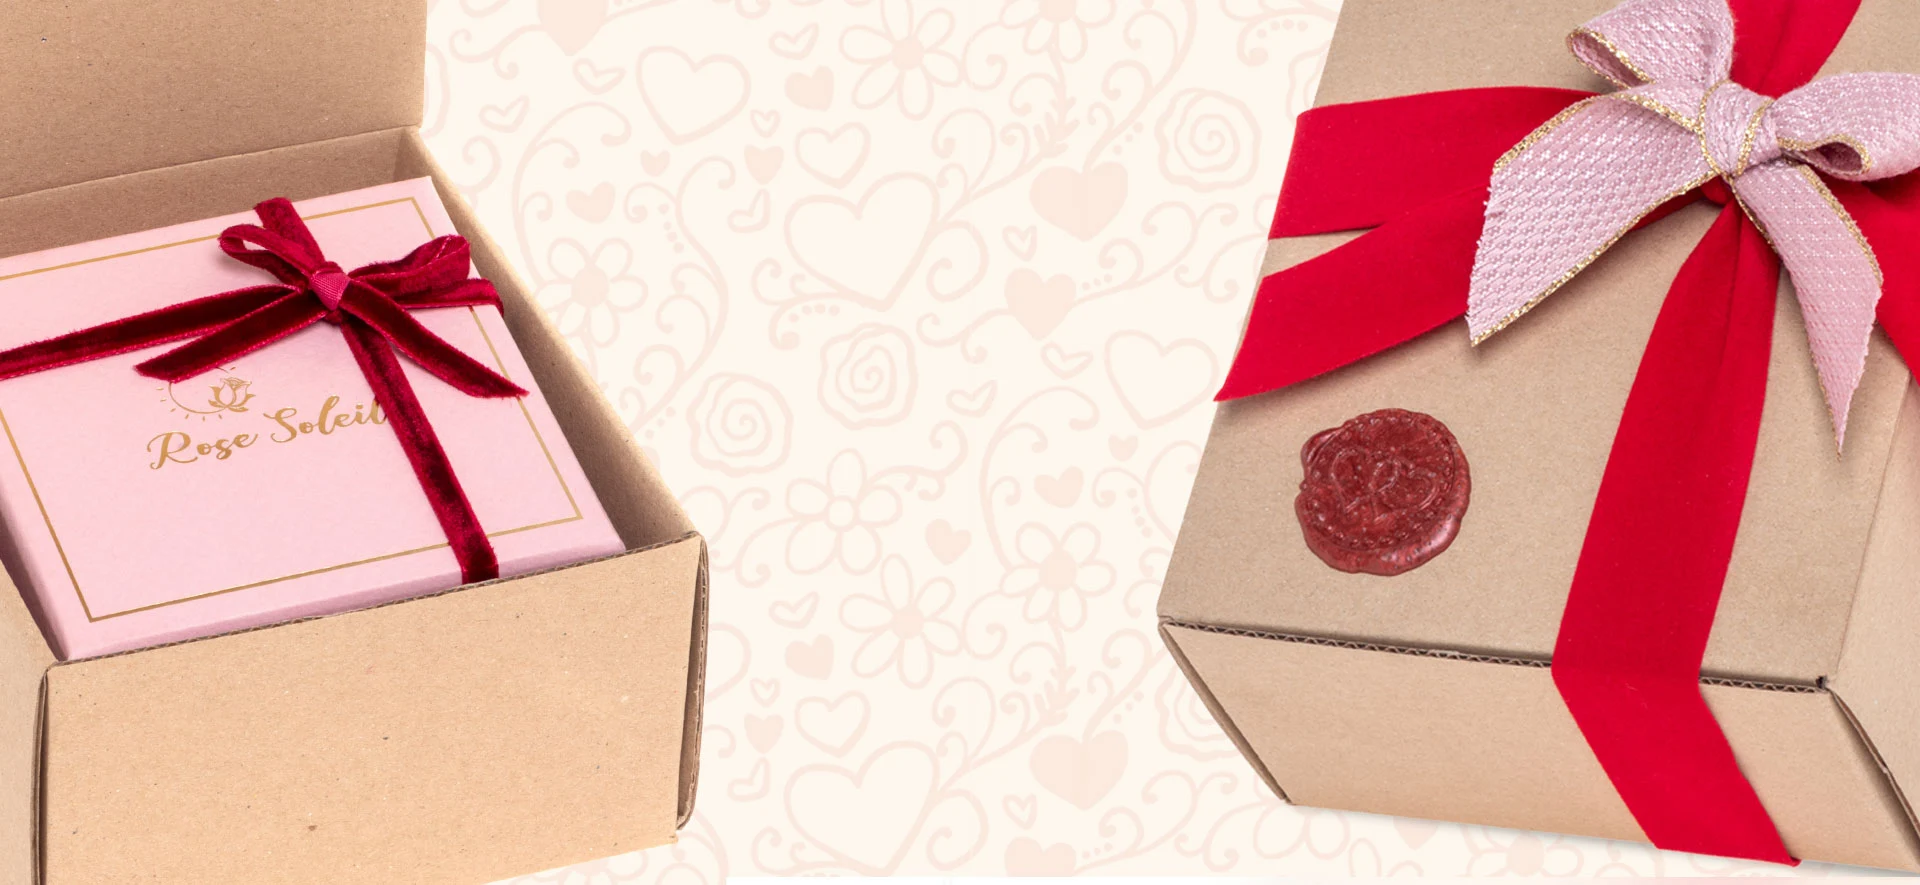 Rose Soleil - shop online - regalo San Valentino per lei - gioielli fidanzata - collane bracciali orecchini donna - box for my love